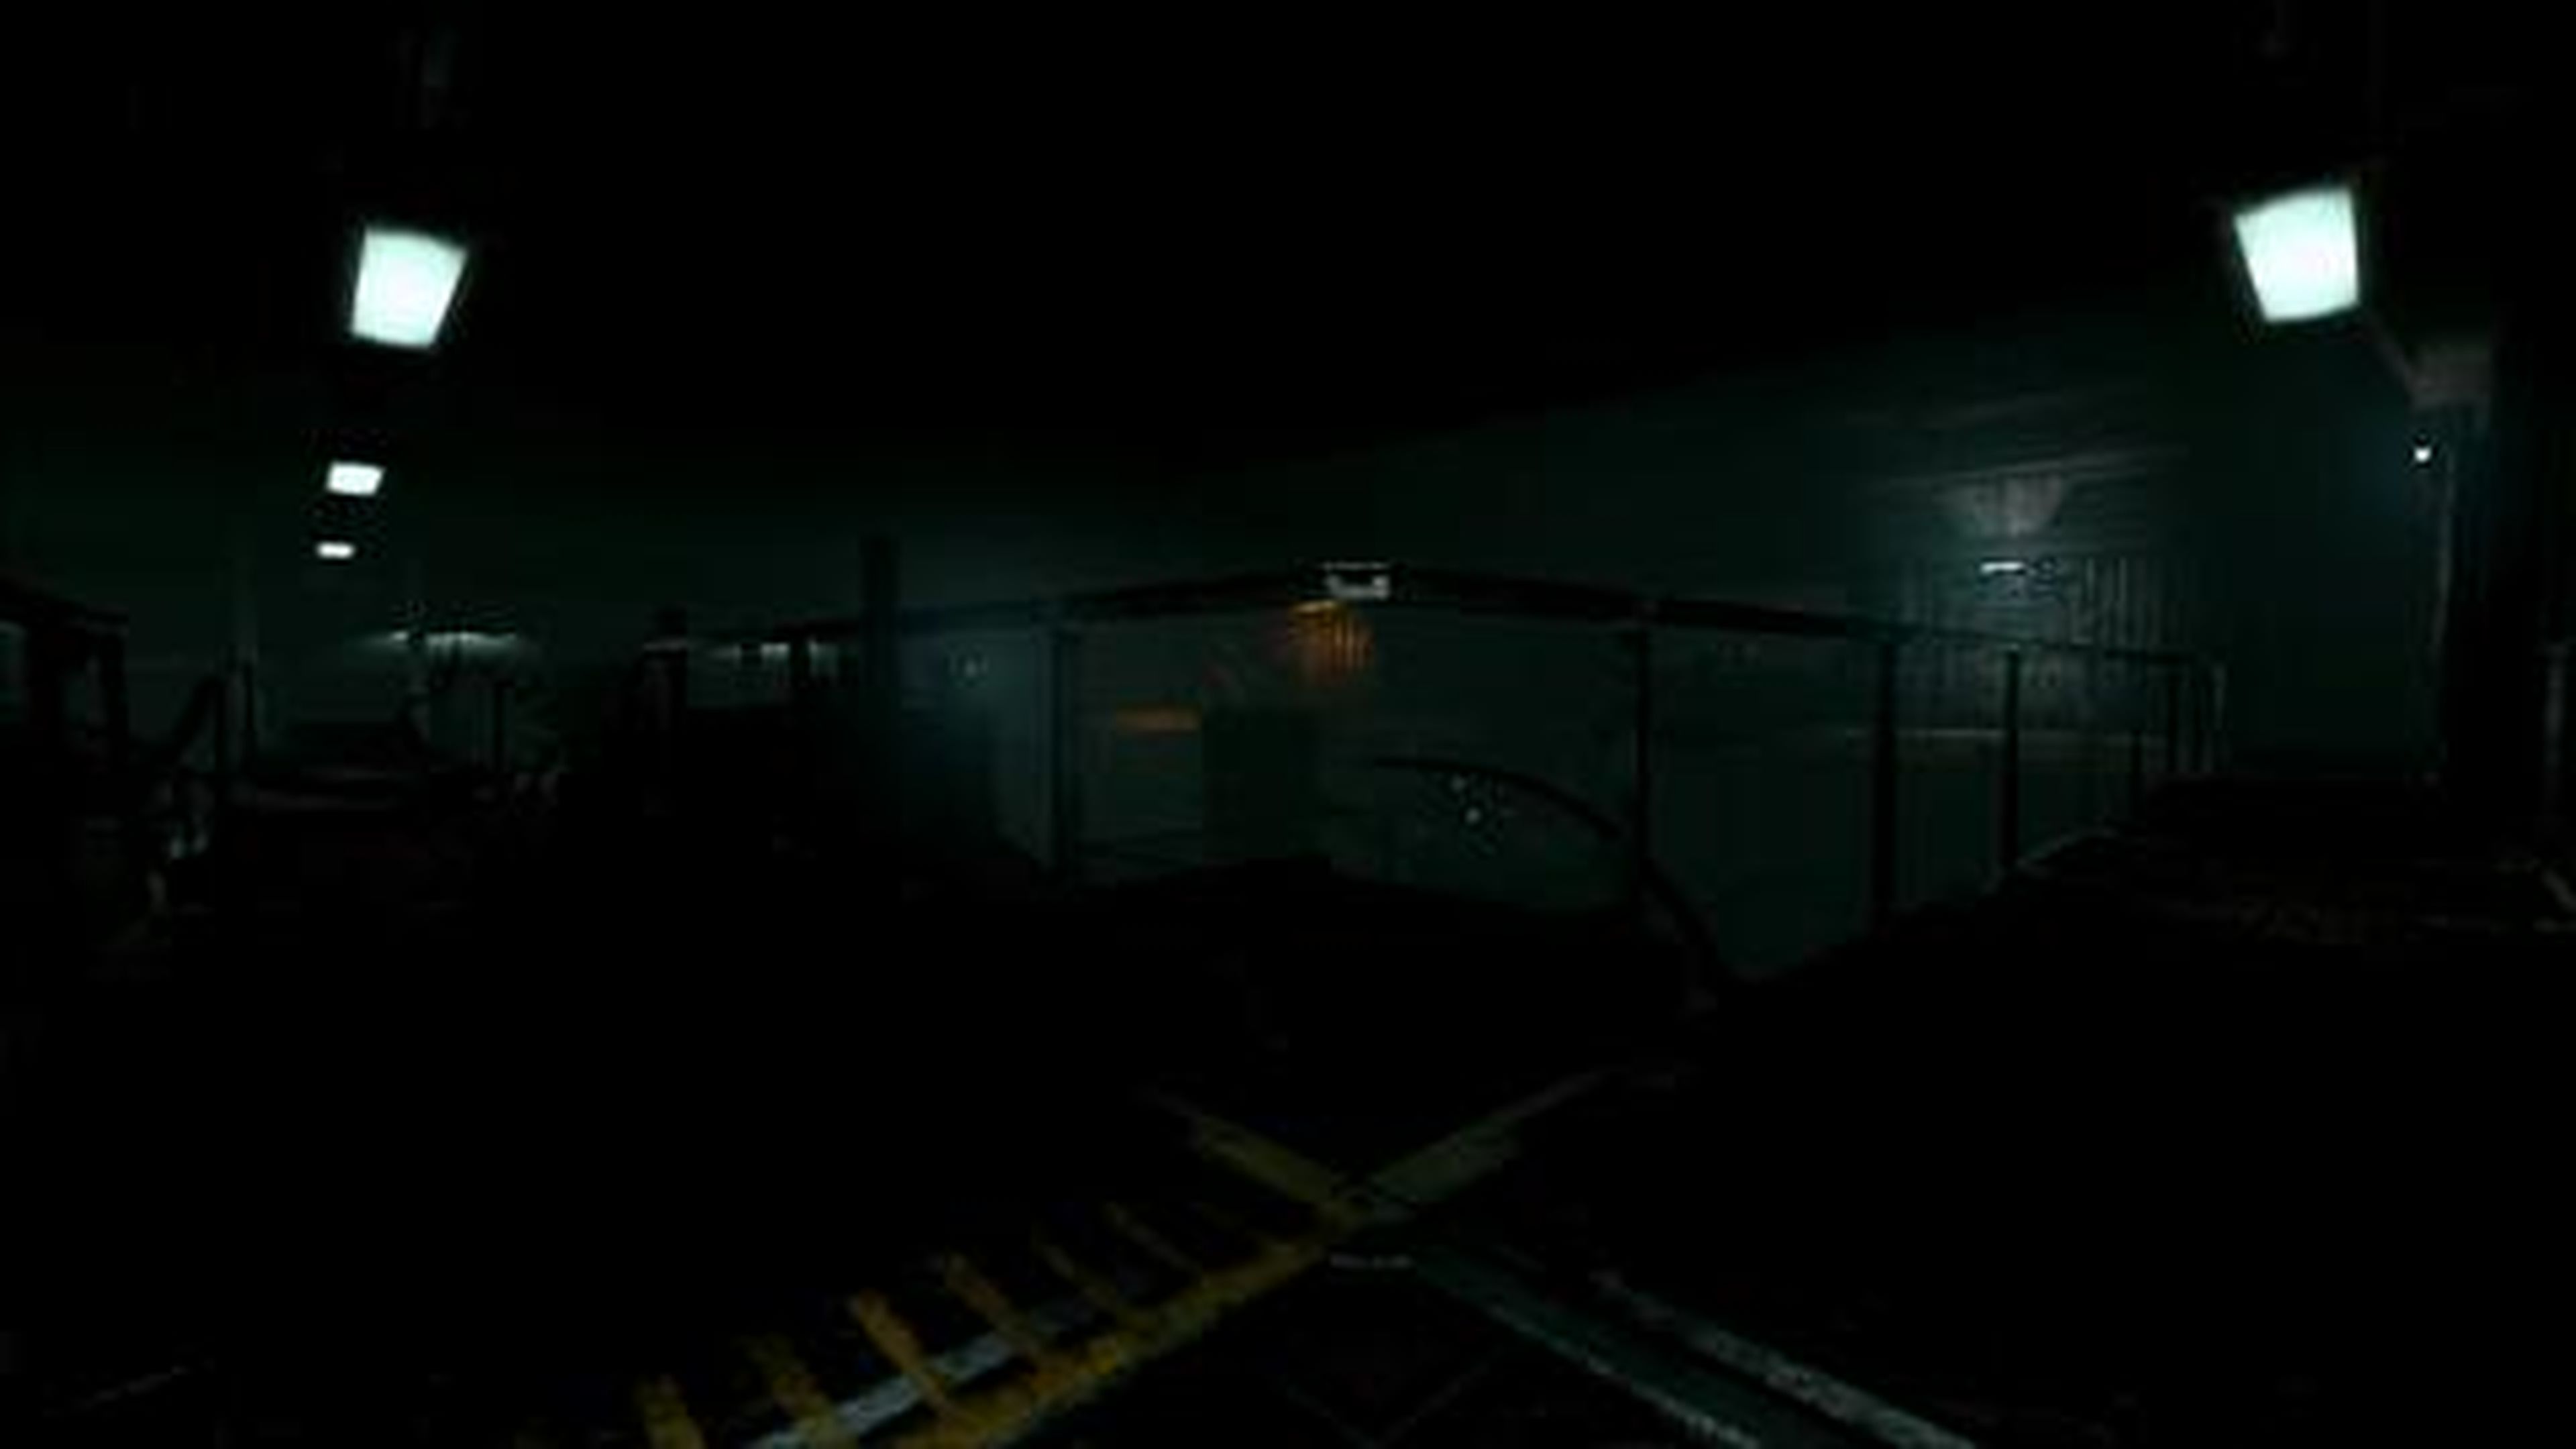 SOMA PS4 Trailer 2 (Developer of Amnesia The Dark Descent)